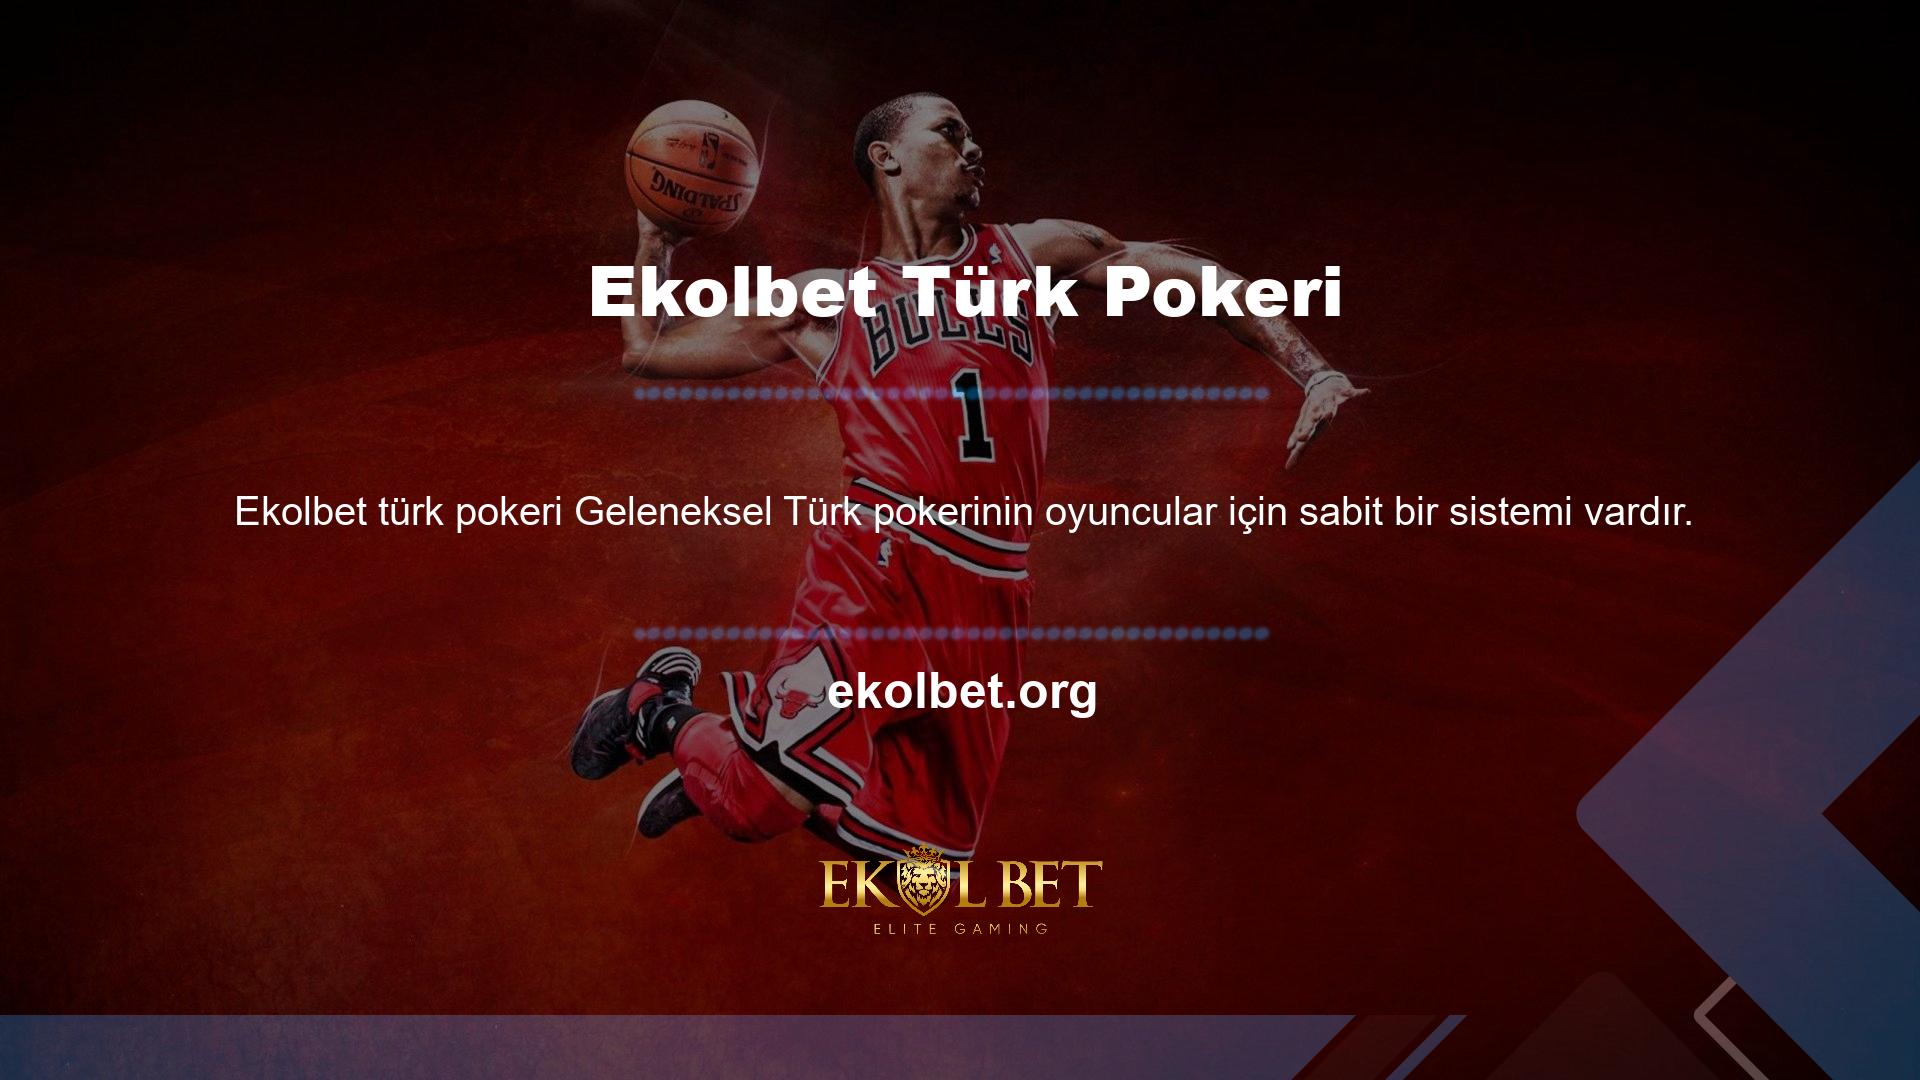 Oyuncular, kolay ve karlı olduğu için Türk pokerini tercih ediyor